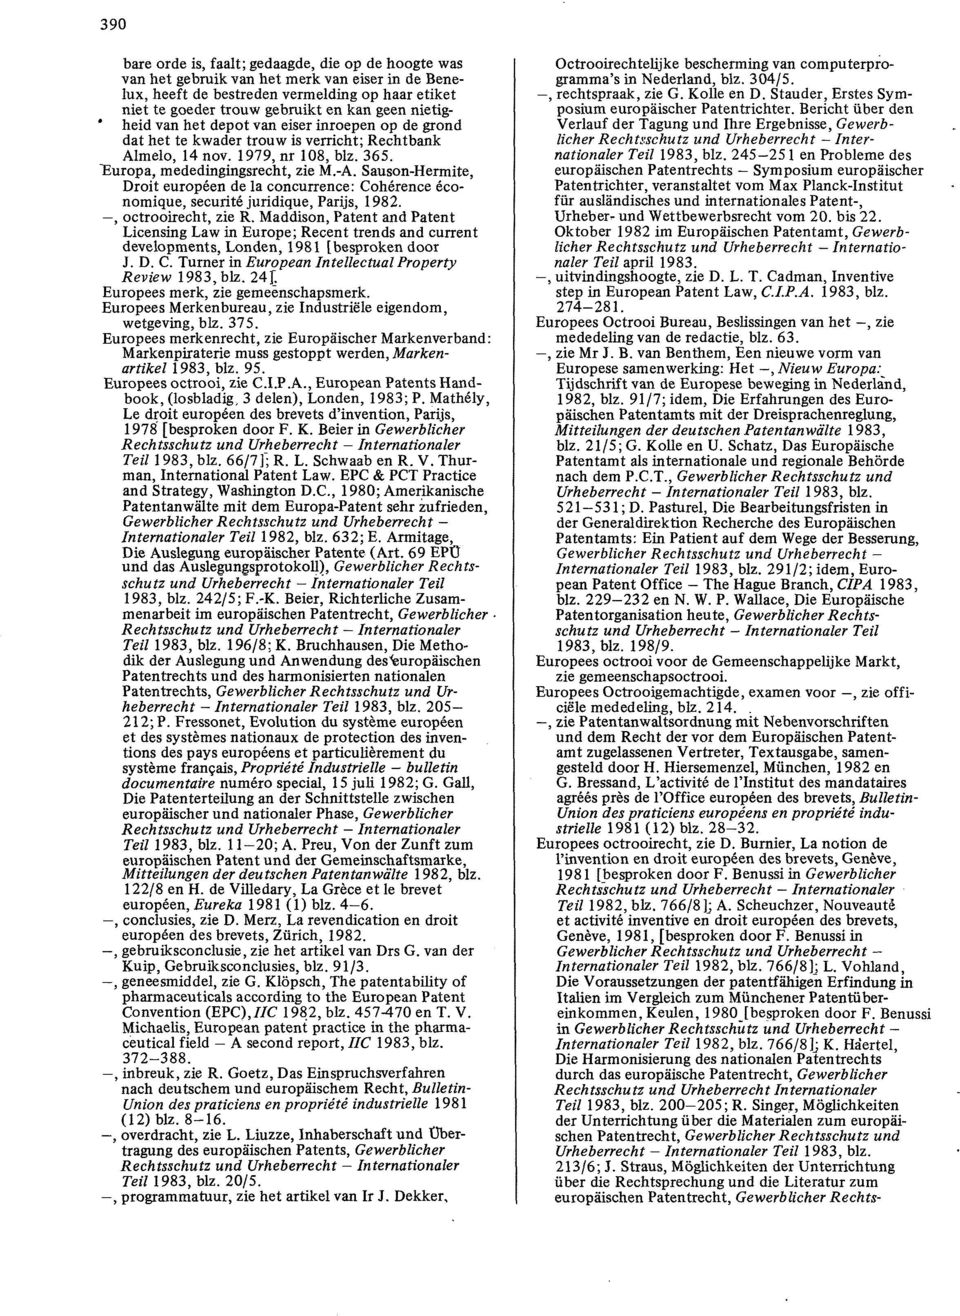 Sauson-Hermite, Droit europeen de la concurrence: Cohérence économique, securité juridique, Parijs, 1982., octrooirecht, zie R.